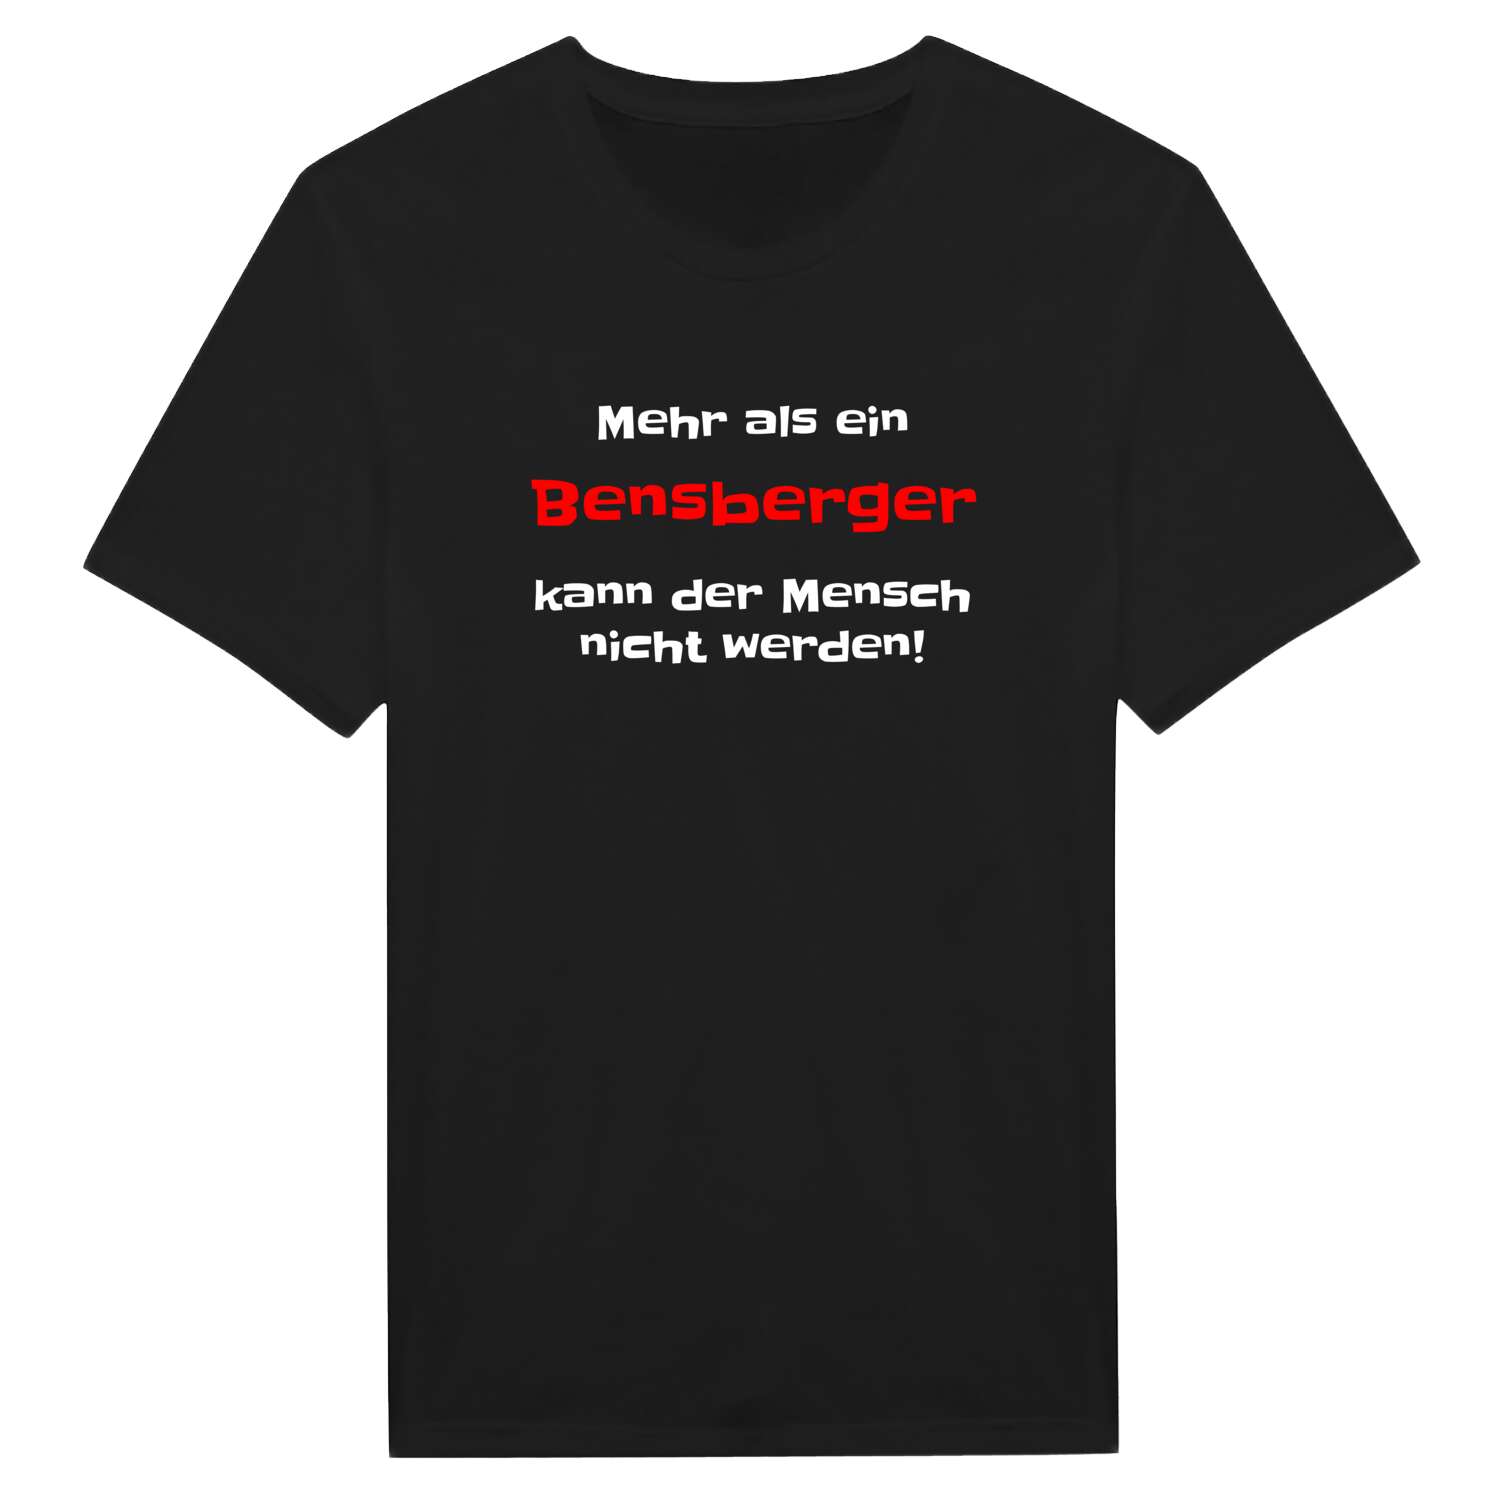 Bensberg T-Shirt »Mehr als ein«